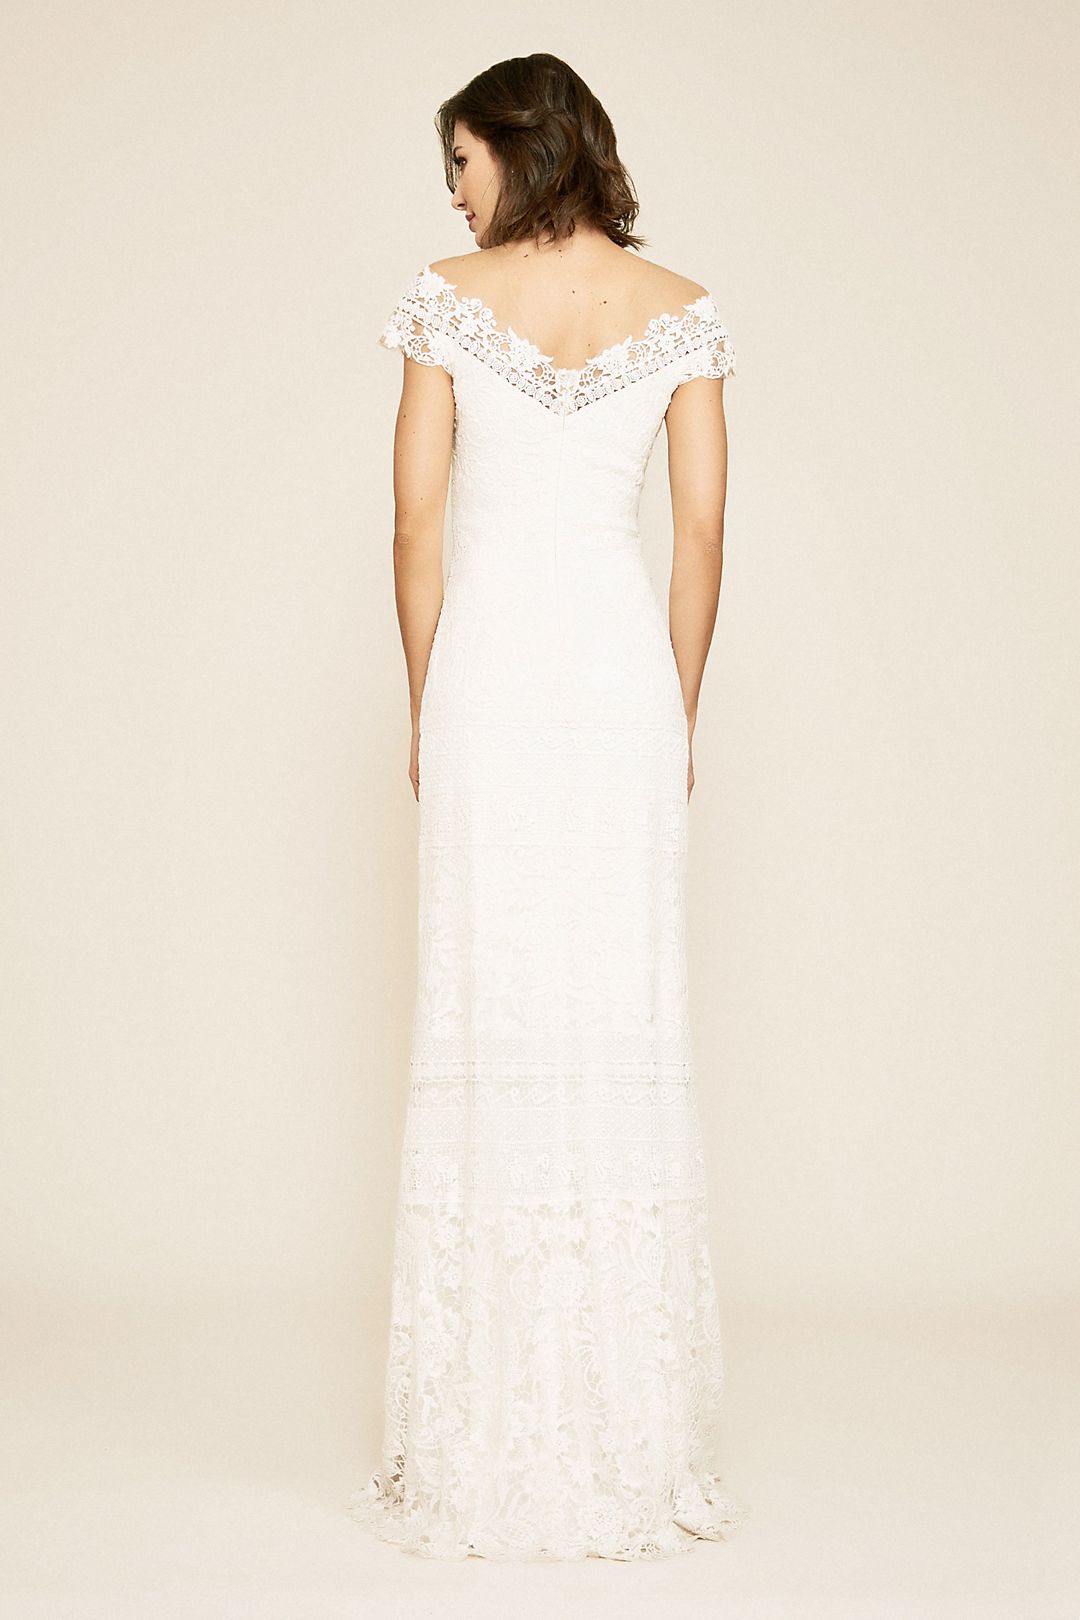 Joelle Mixed Lace Cap Sleeve Sheath Wedding Dress Image 2